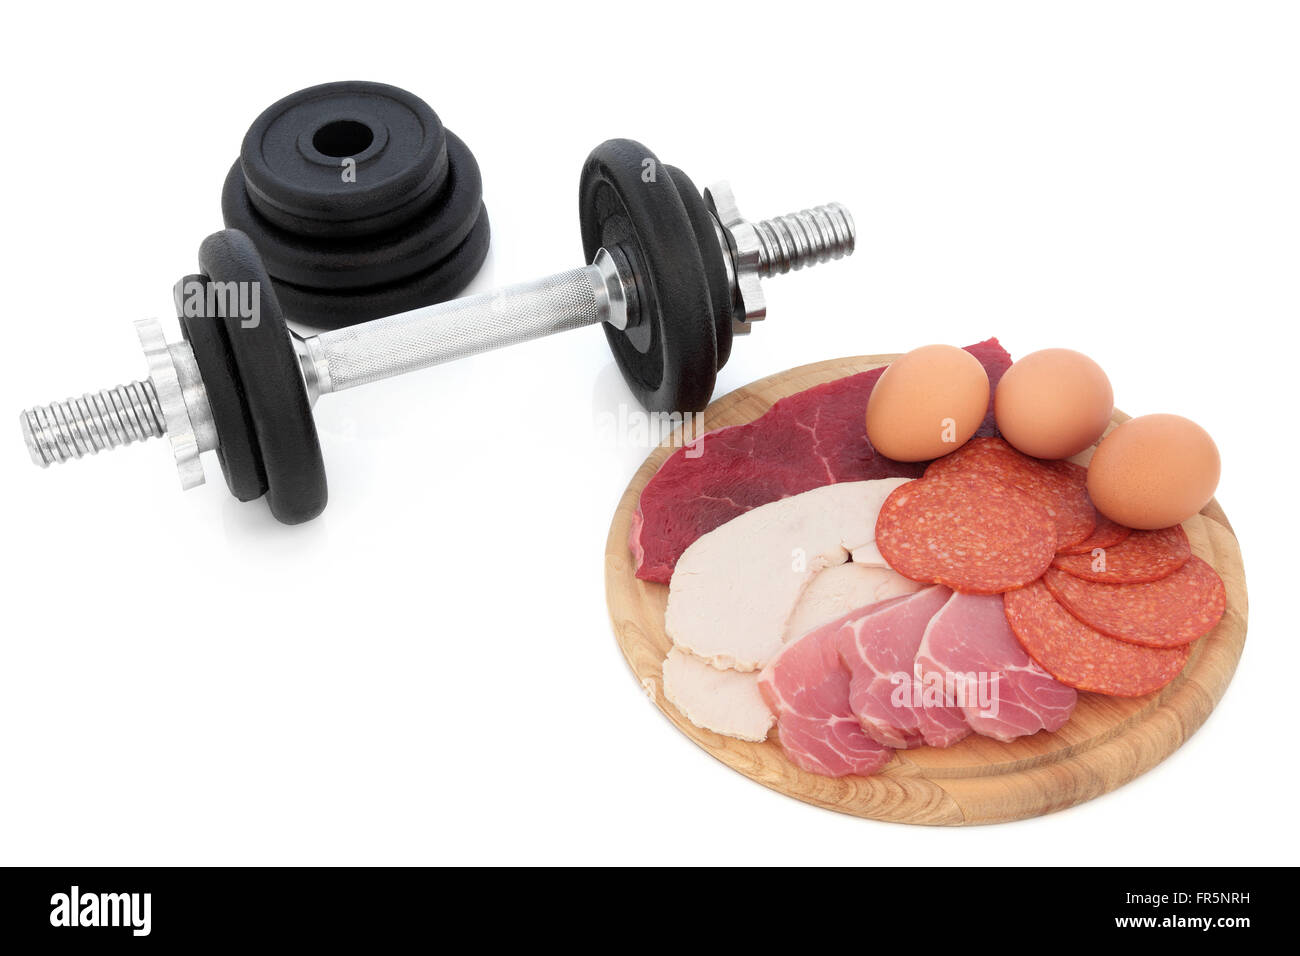 Body-building proteinreiche Nahrung Huhn, mageres Steak, Speck, Salami und Eier mit Hantel Gewichte auf weißem Hintergrund. Stockfoto